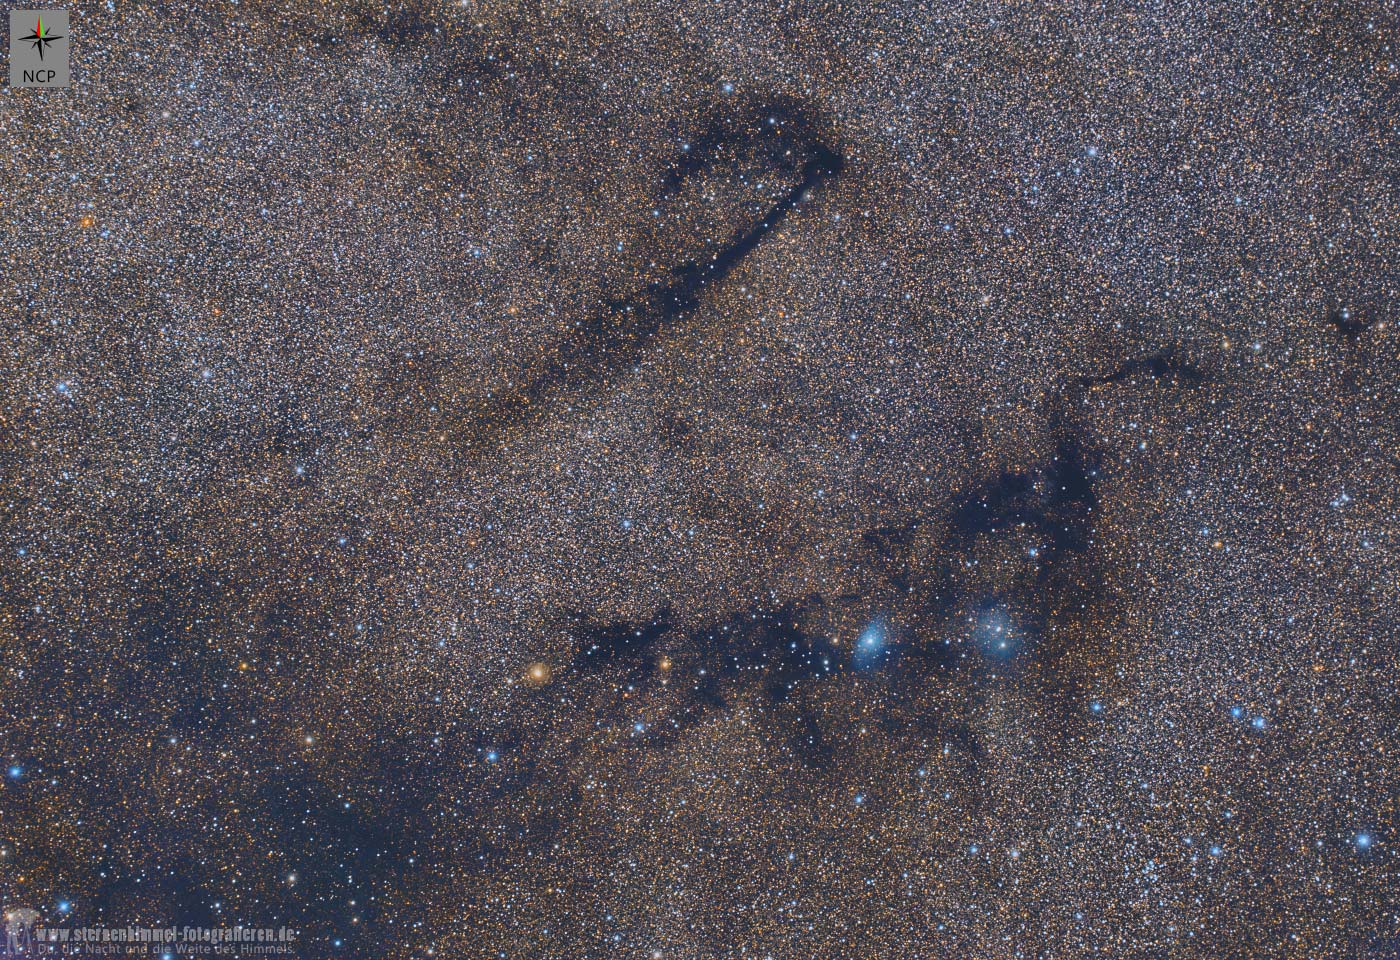 Dunkelnebel im Sternbild Füchschen, vdb 126, van den bergh 126, LDN 781, LDN 767, interstellare Materie, Dunkle Materie